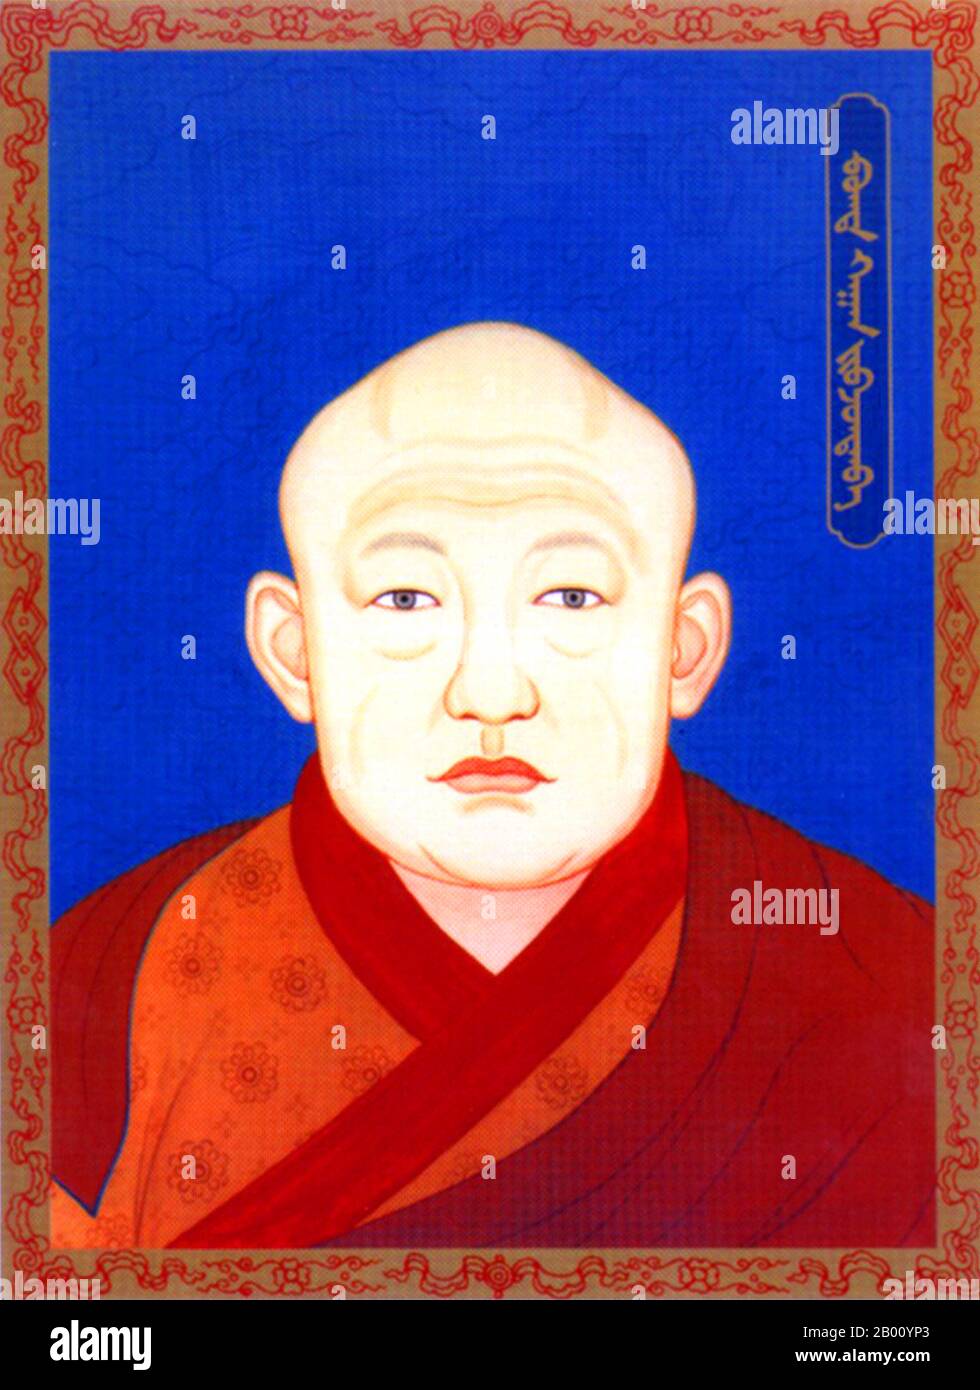 Mongolia: L'ottavo Jebtsundamba Khutugtu Bogd Khan, ultimo sovrano monarchico della Mongolia, 20 ° secolo. Il Bogd Khan (c. 1869 - 20 maggio 1924) fu contemporaneamente capo religioso e laico dello stato mongolo fino agli anni venti. Ikh Huree, come allora era noto Ulan Bator, era la sede del principale Buddha vivente della Mongolia (il Jebtsundamba Khutuktu, conosciuto anche come il Bogdo Gegen e più tardi come Bogd Khan), che si è classificato terzo nella gerarchia ecclesiastica Lamaista-Buddista, dopo il Dalai lama e il Panchen lama. Foto Stock